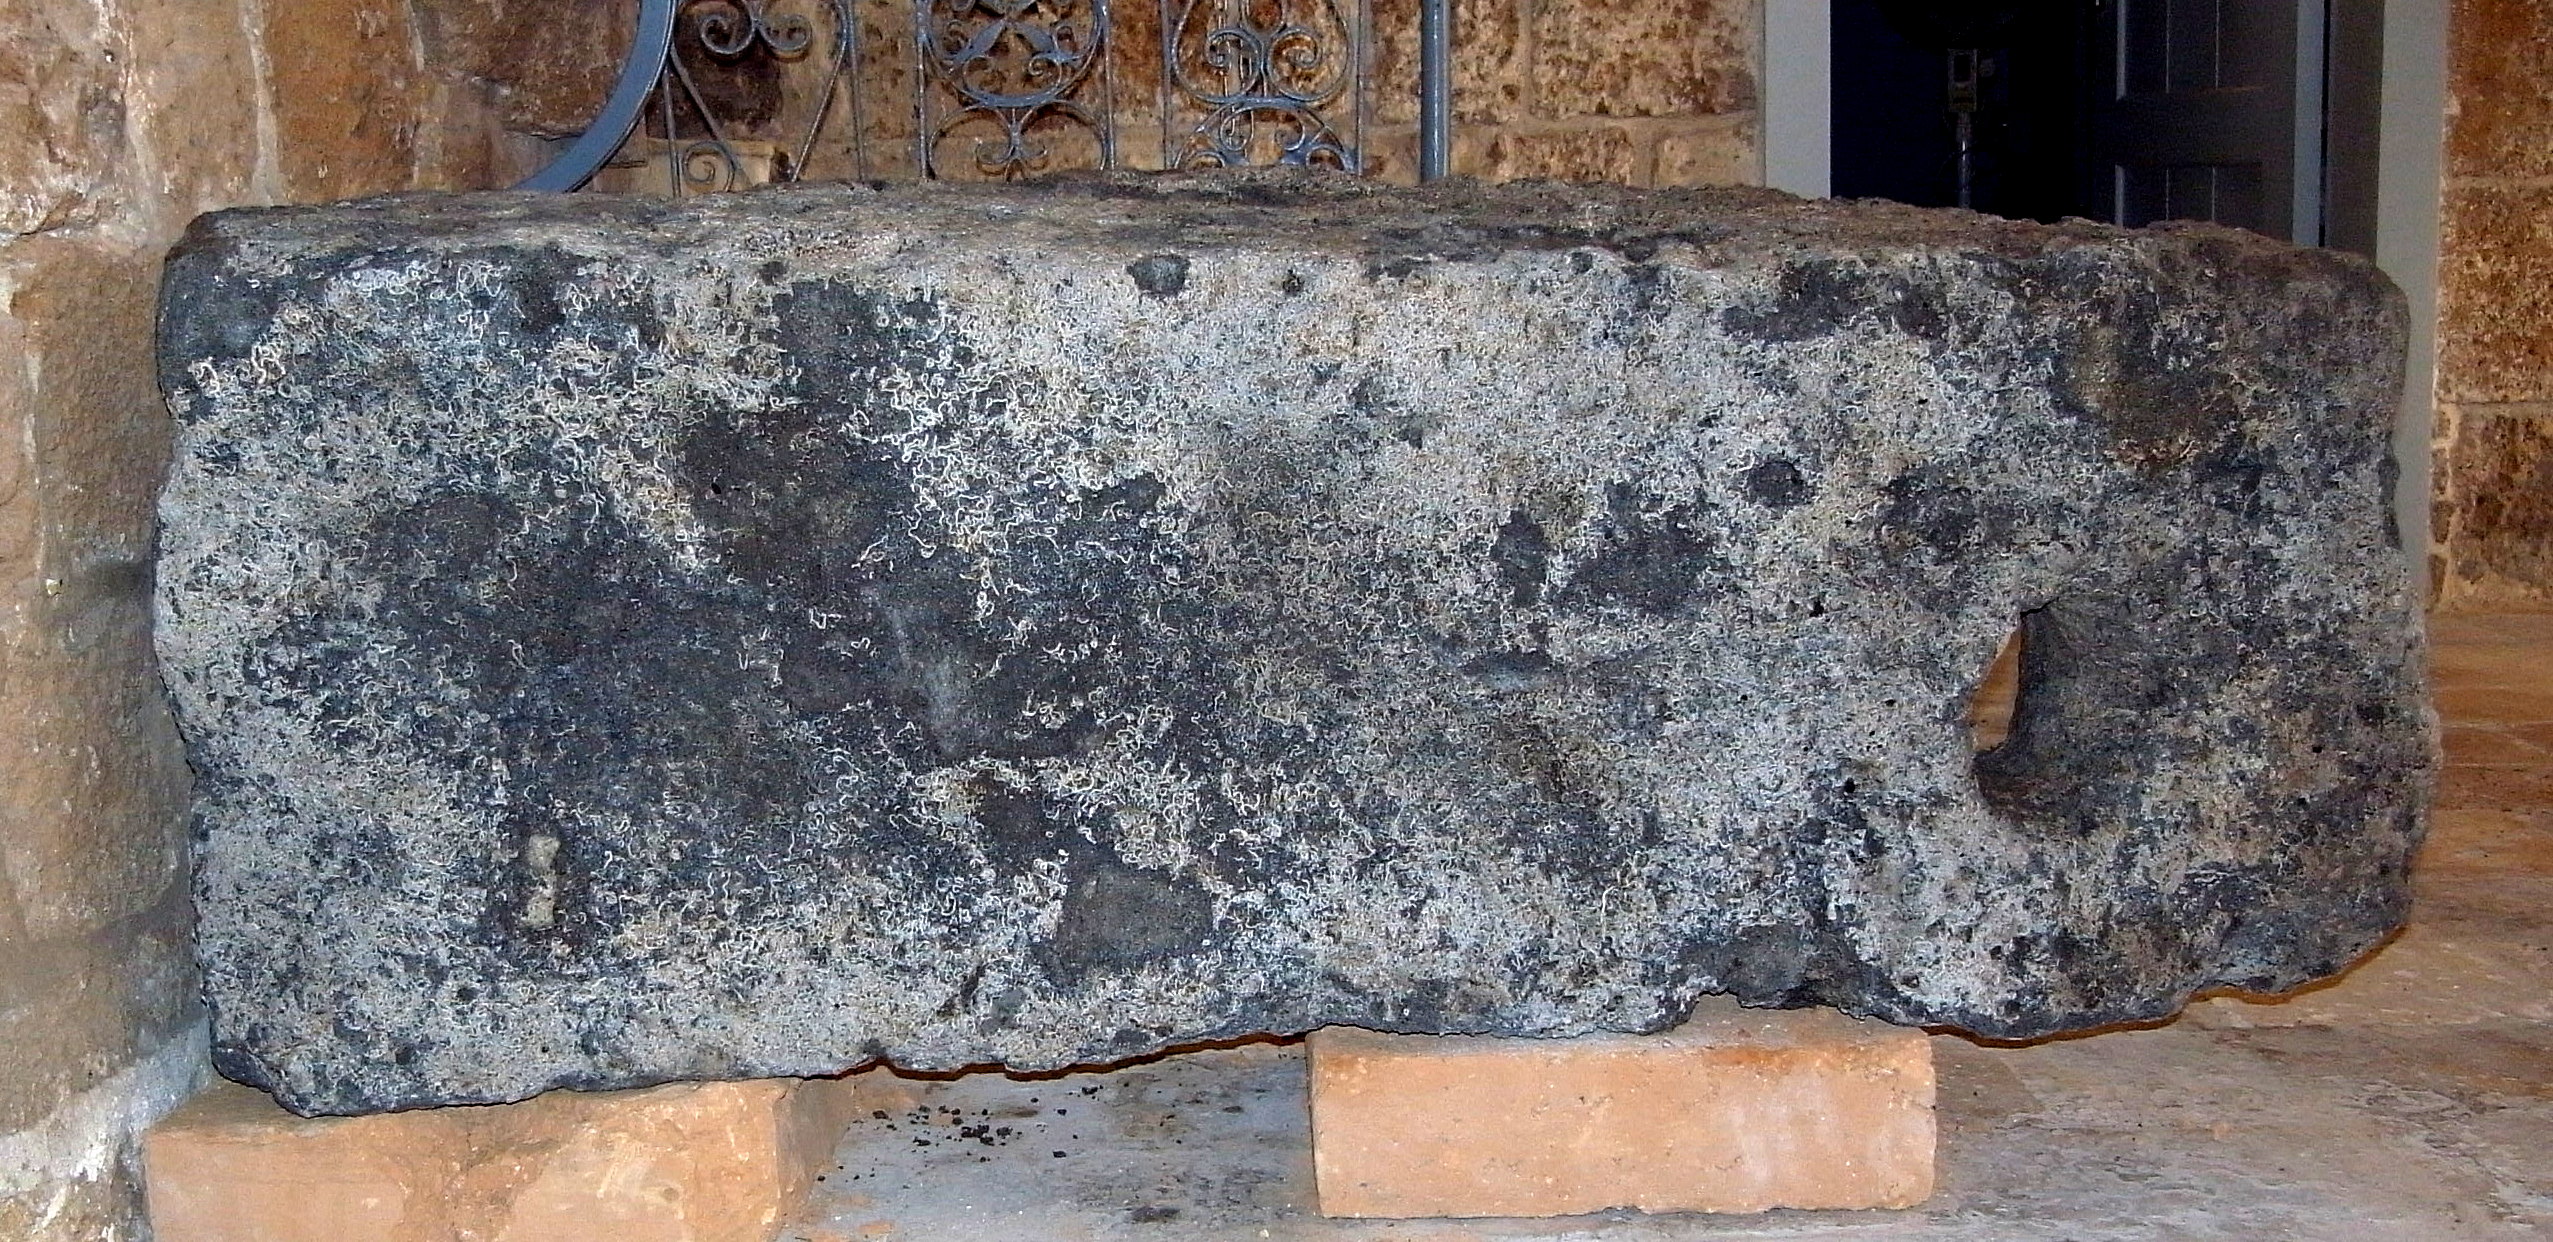 אחת מאבני הקשירה שנמצאו בקרקעית חומת הים הדרומית בעכו